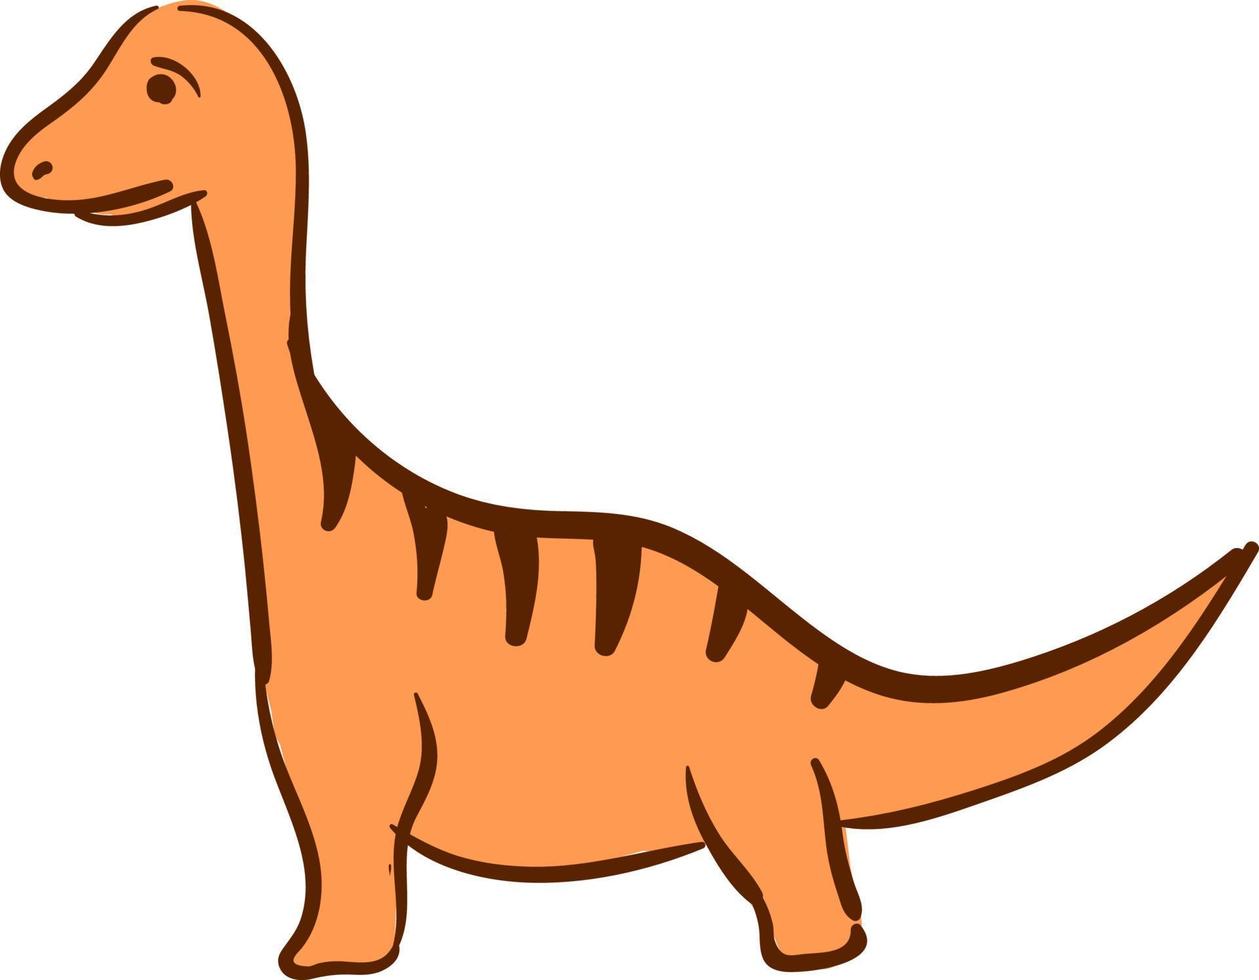 triste dinosaure orange, illustration, vecteur sur fond blanc.